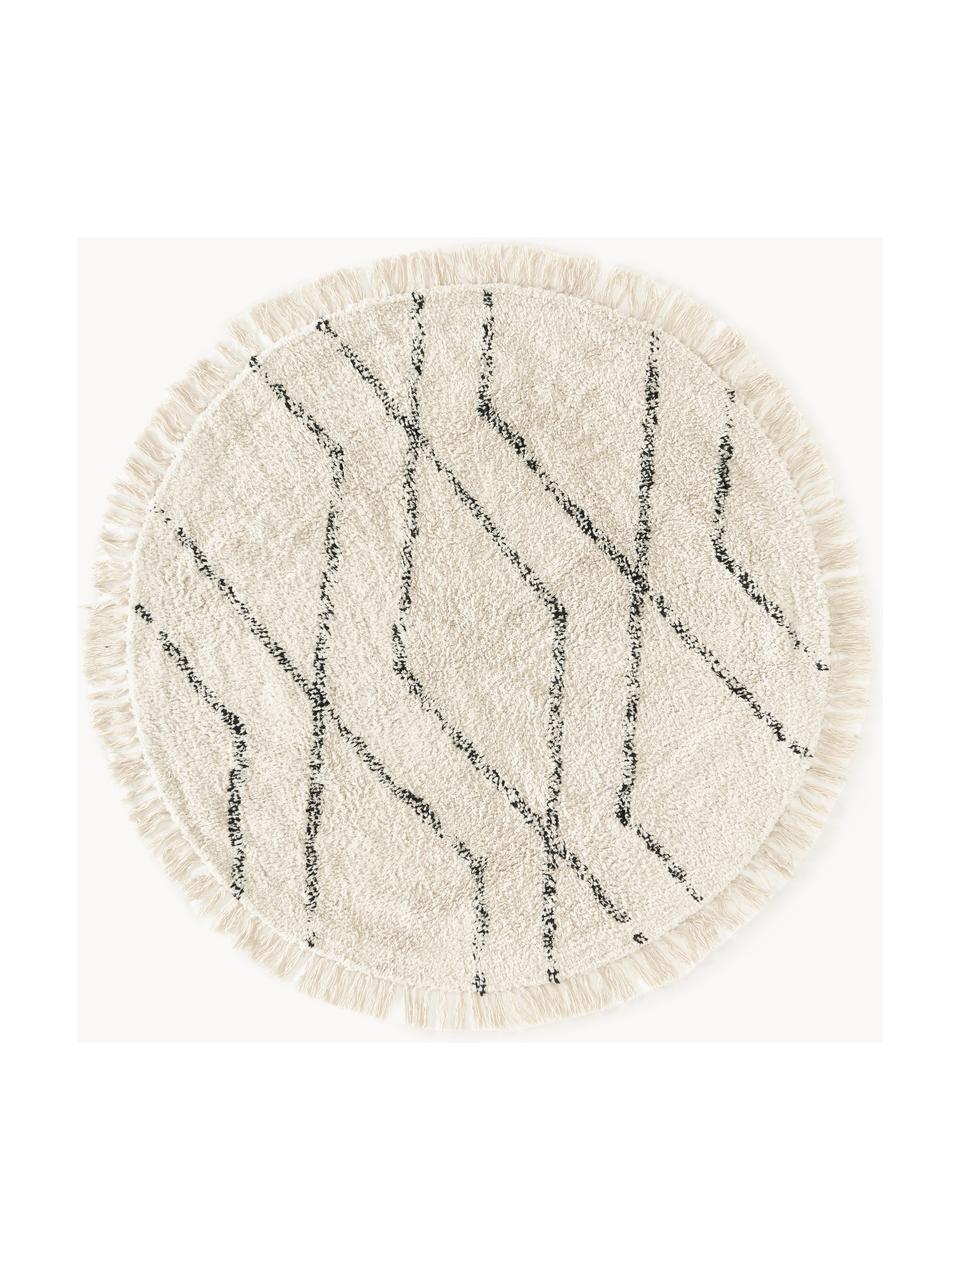 Runder Baumwollteppich Bina mit Rautenmuster, handgetuftet, 100% Baumwolle, Beige, Schwarz, Ø 110 cm (Grösse S)